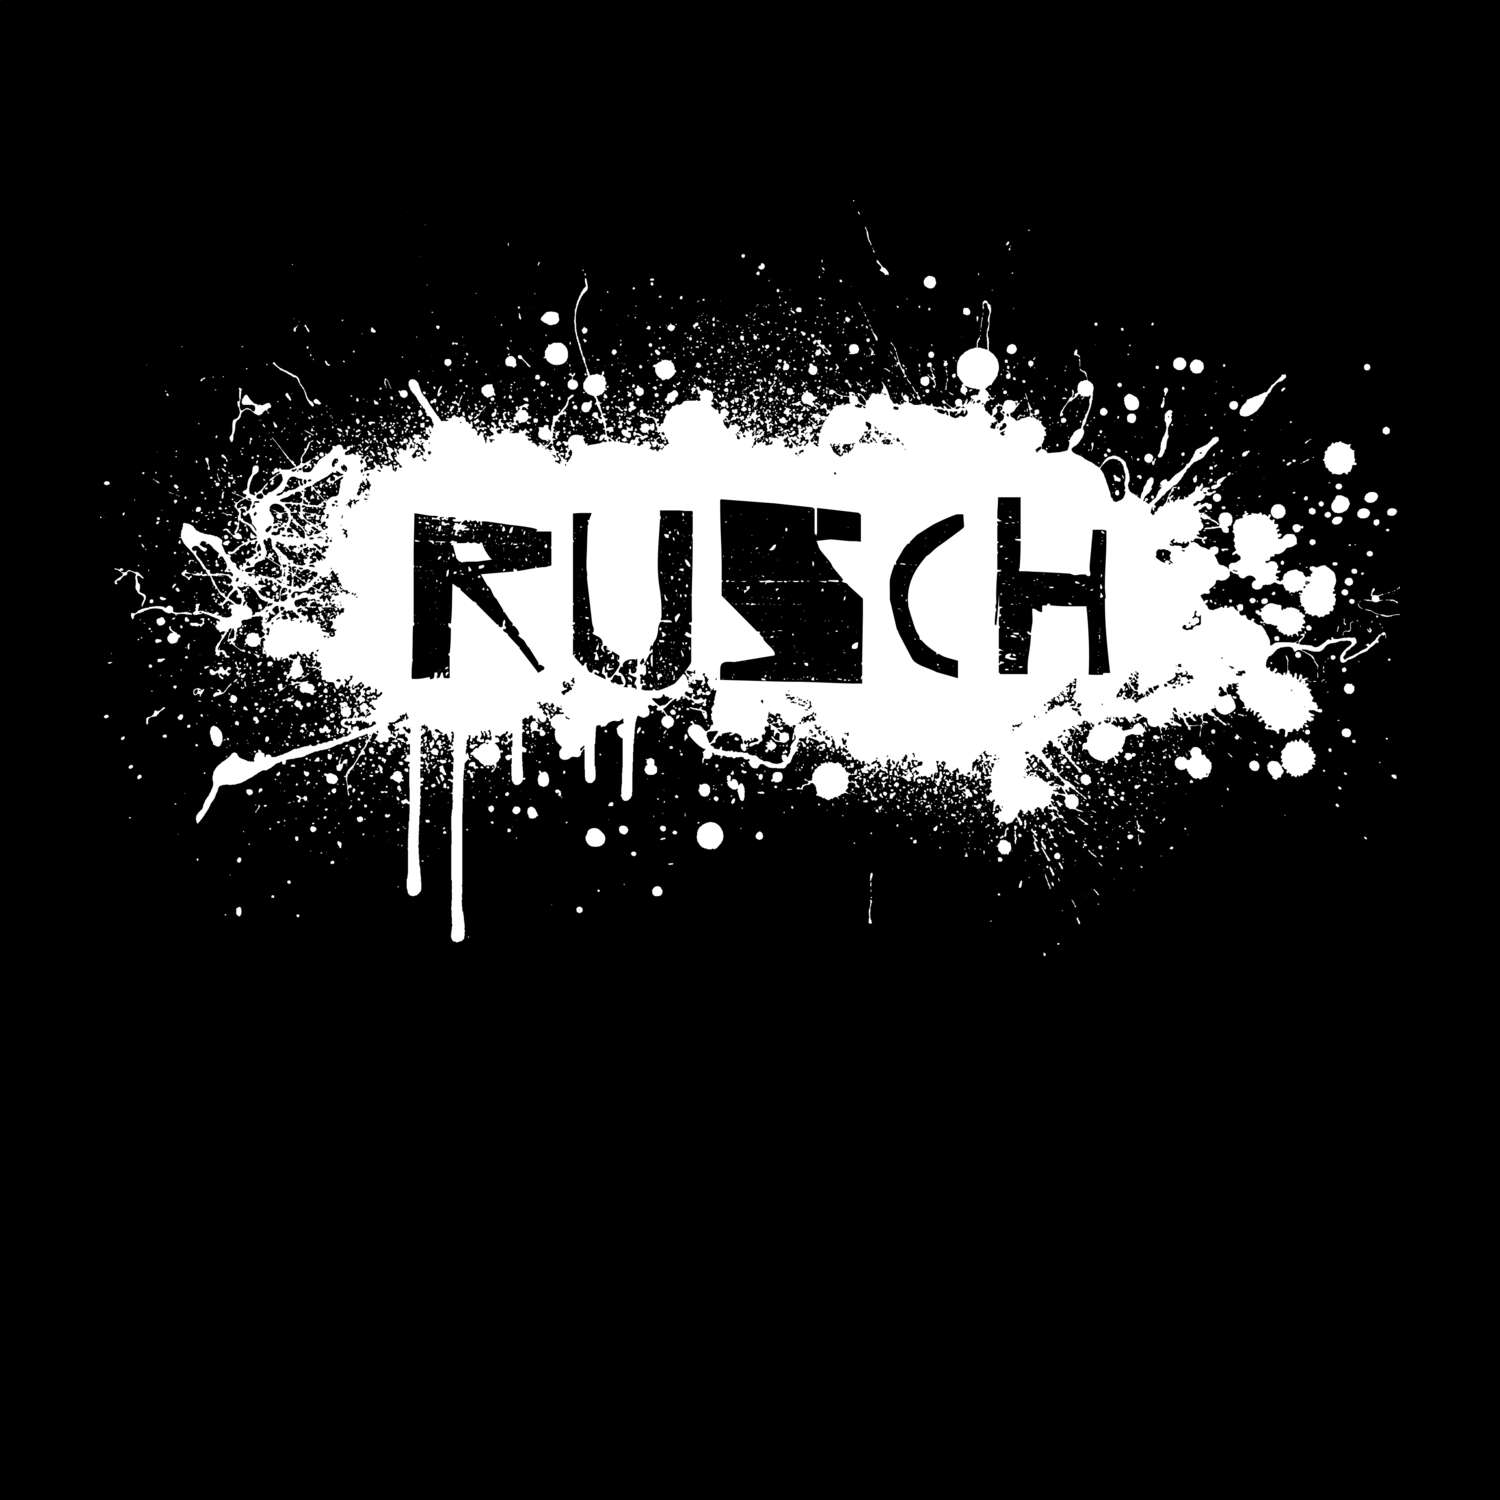 Rusch T-Shirt »Paint Splash Punk«